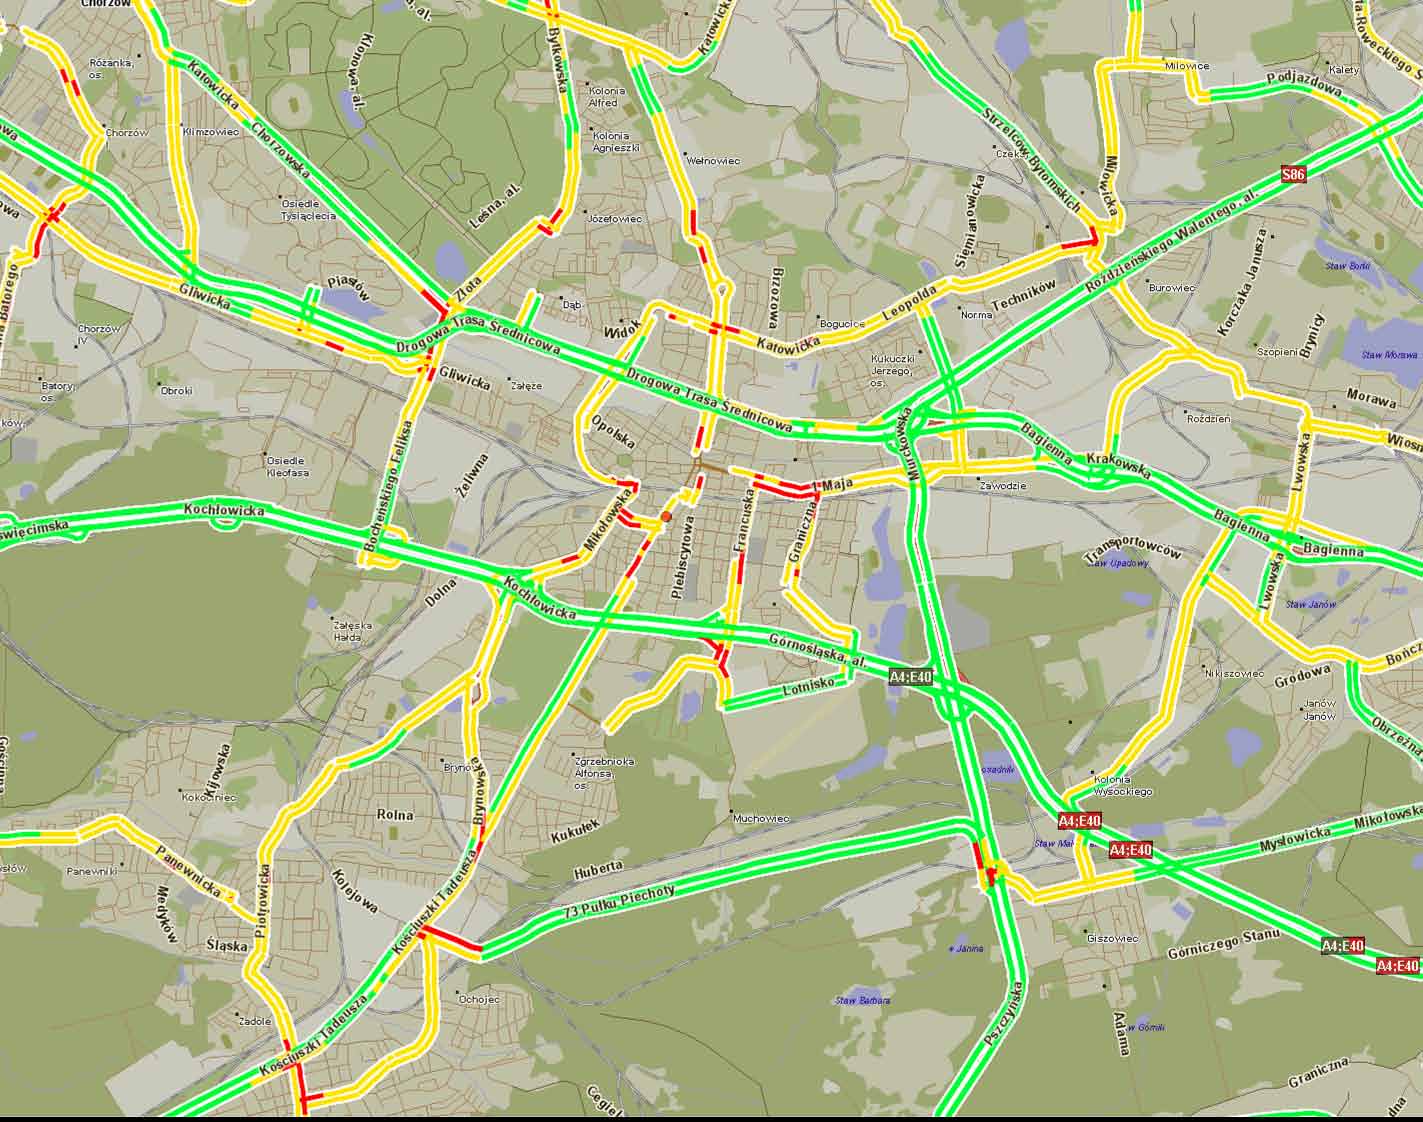 Katowice: średnie prędkości przejazdu w szczycie porannym poniżej 10 km/h 10-20 km/h 20-45 k/mh powyżej 45 km/h 2011 Indigo Sp. z o.o. & Aqurat Sp.